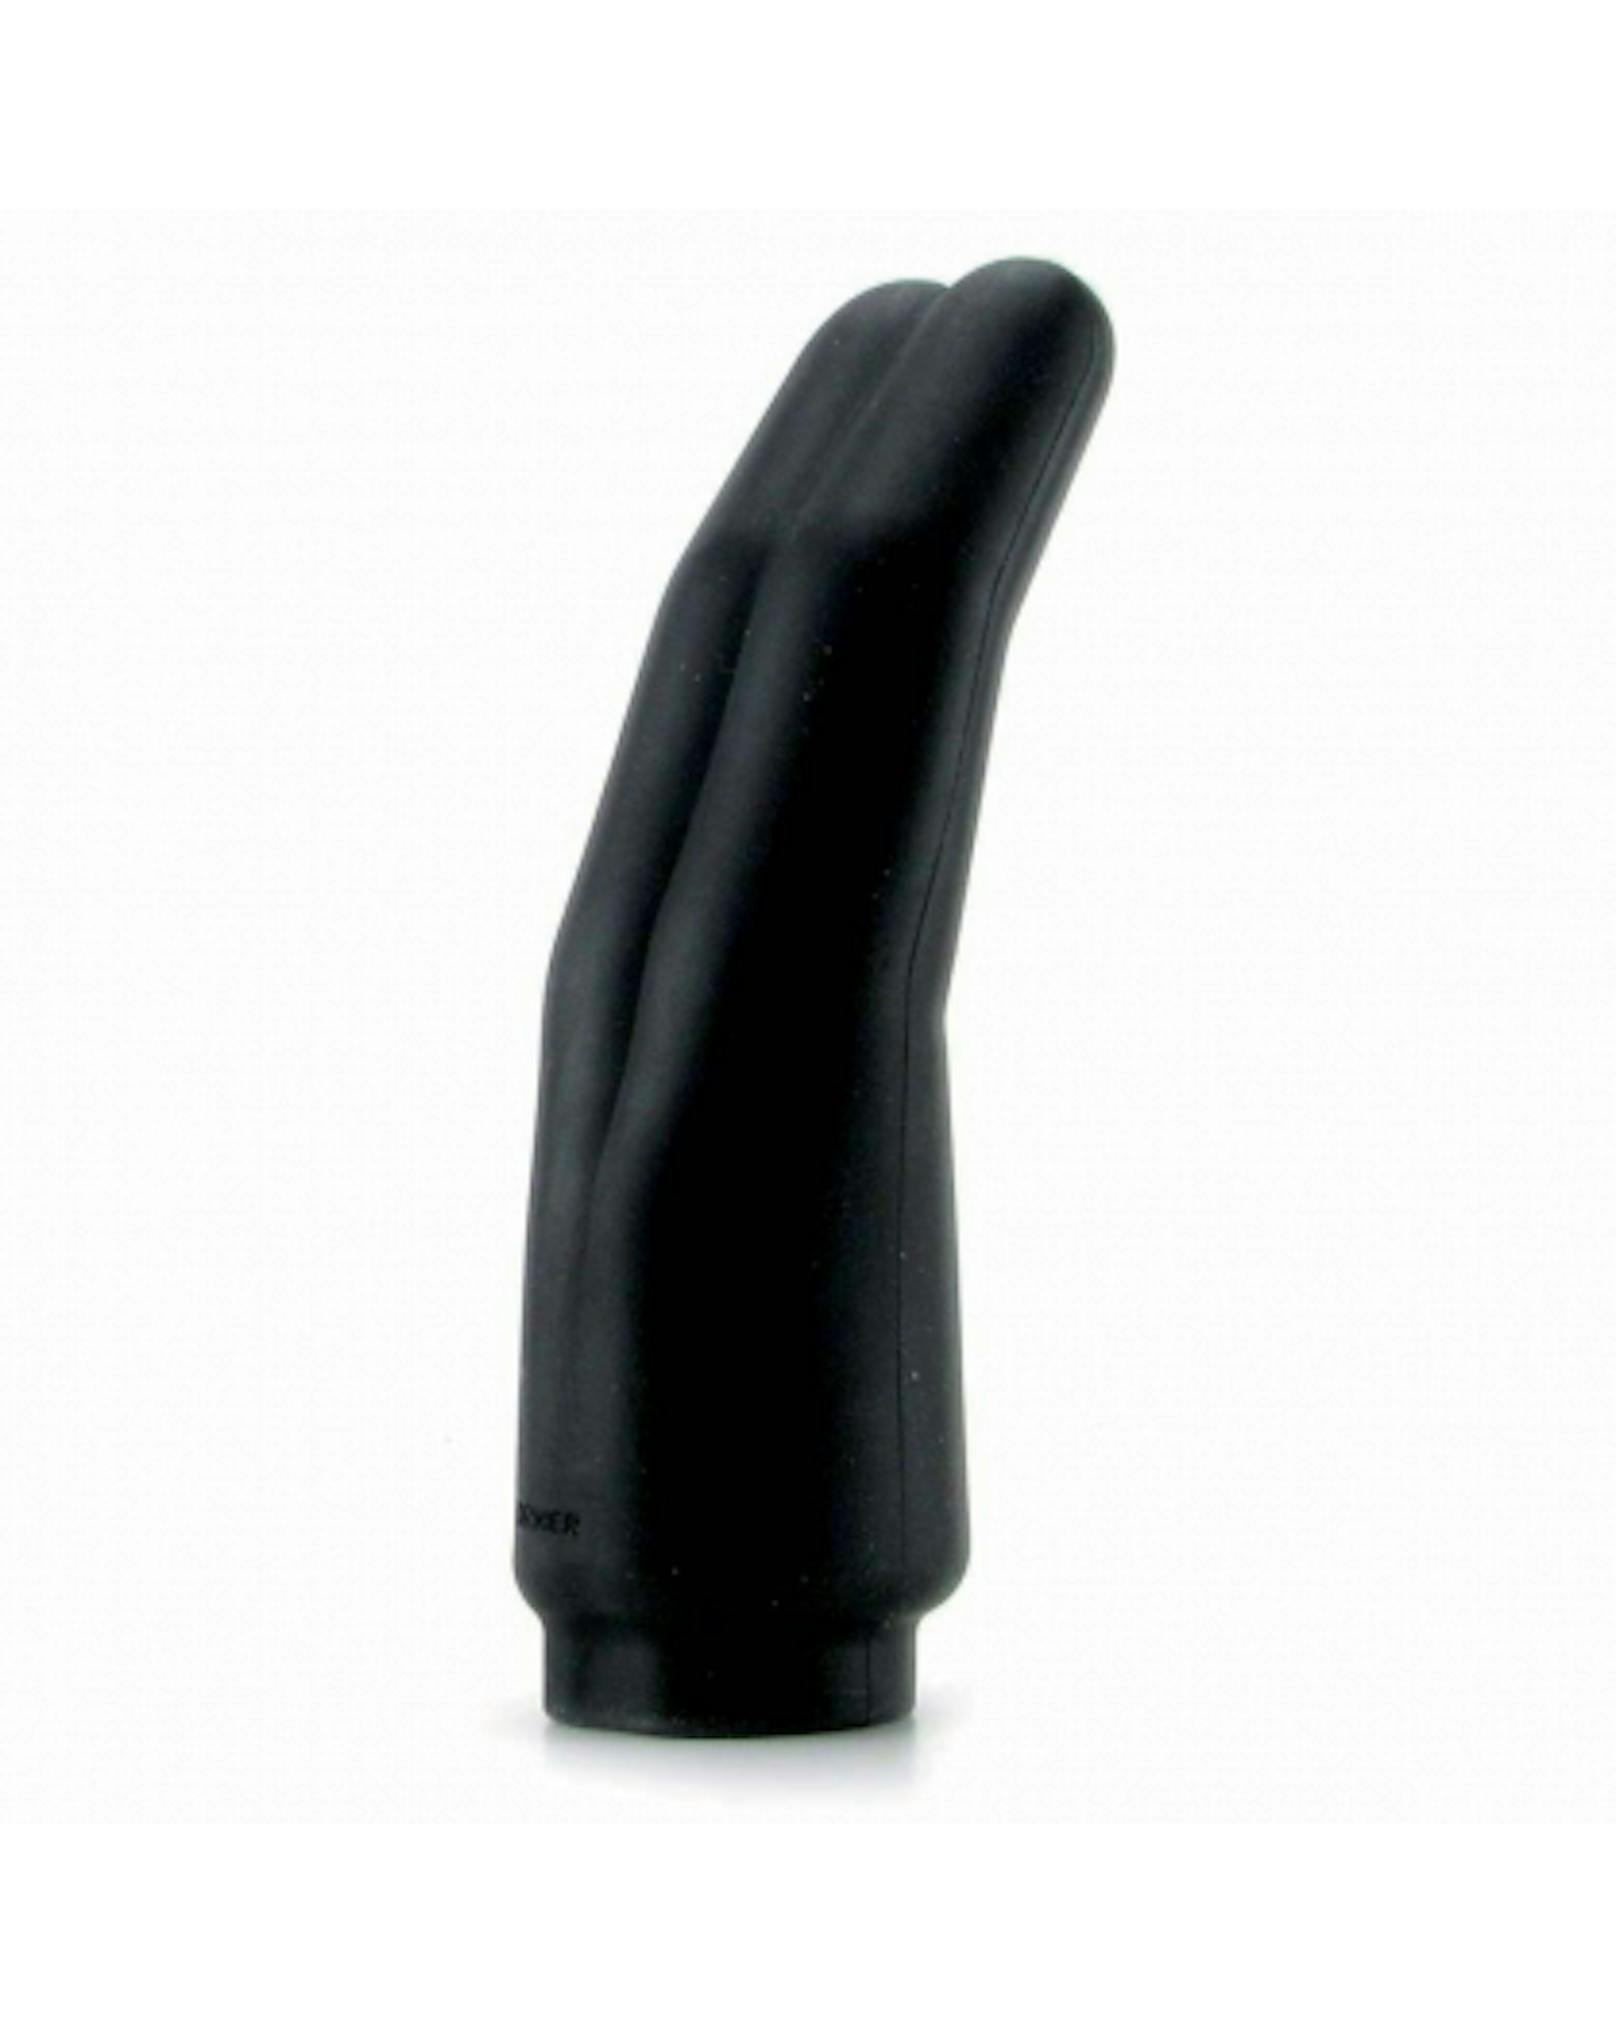 Du magst keine Toys in Penisform? Von der lesbischen Marke Wet for her gibts diesen Fingerverlängerer für eine intensive Stimulation der G-Fläche: Toy Two von Wet for Her.